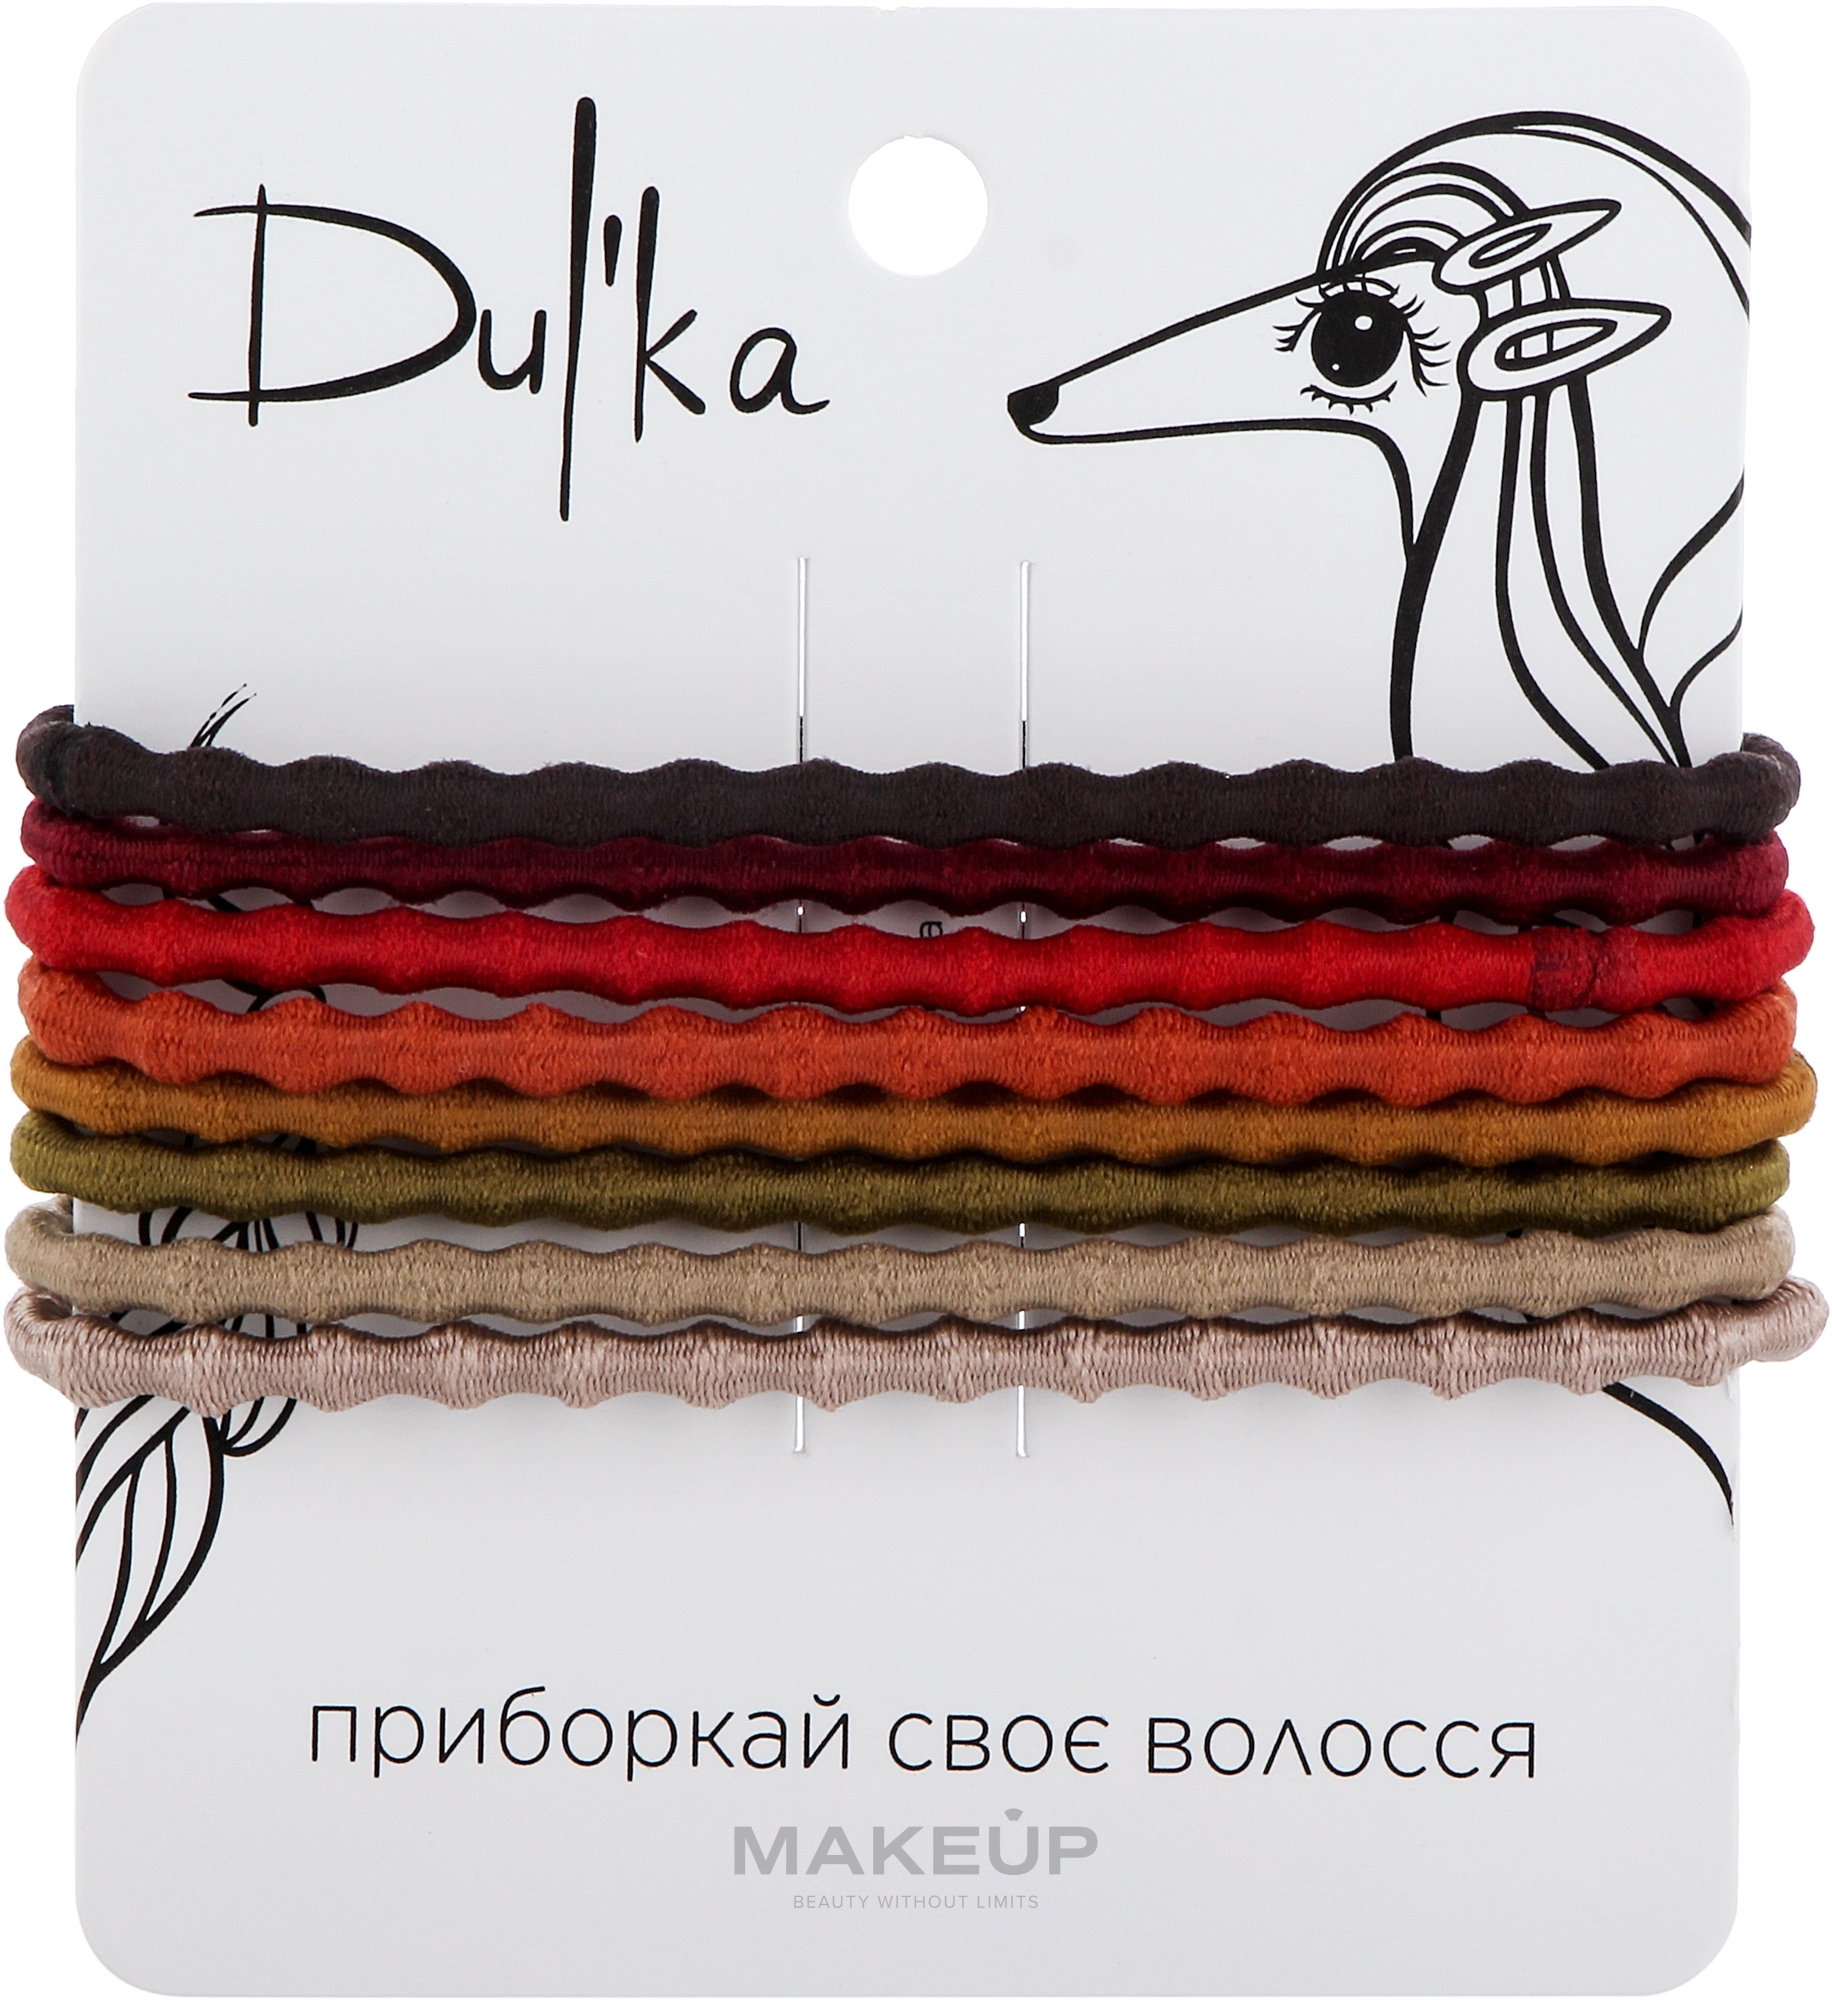 Набор разноцветных резинок для волос UH717764, 8 шт - Dulka — фото 8шт